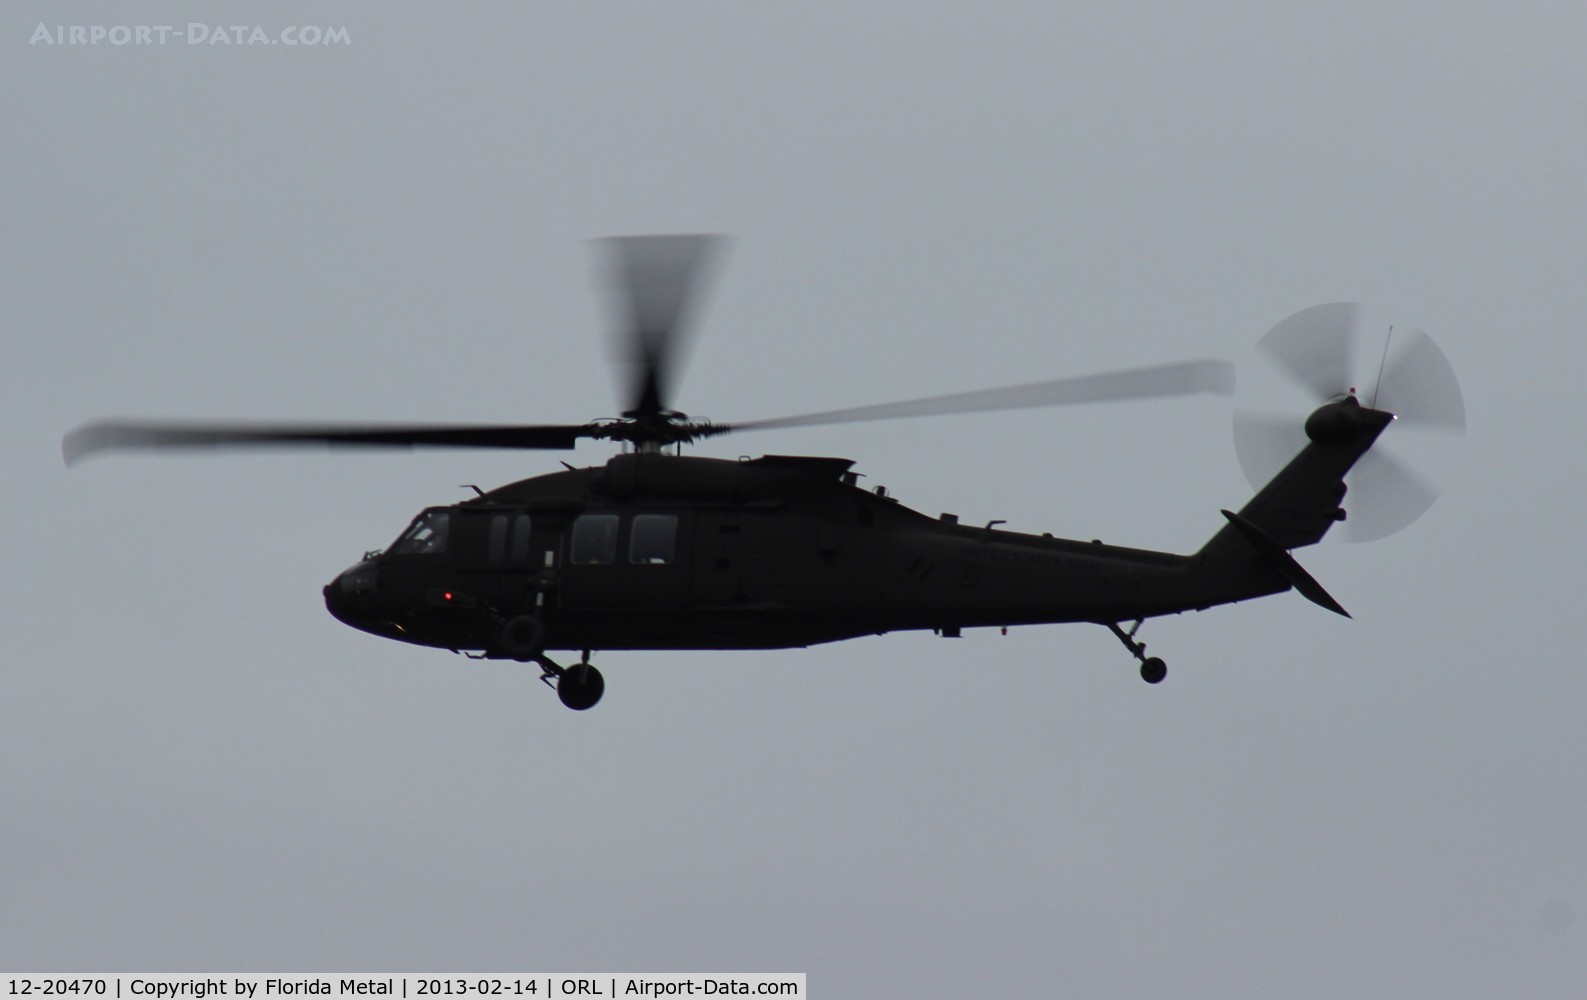 12-20470, 2012 Sikorsky UH-60M Black Hawk C/N 70.4139, UH-60M Black Hawk